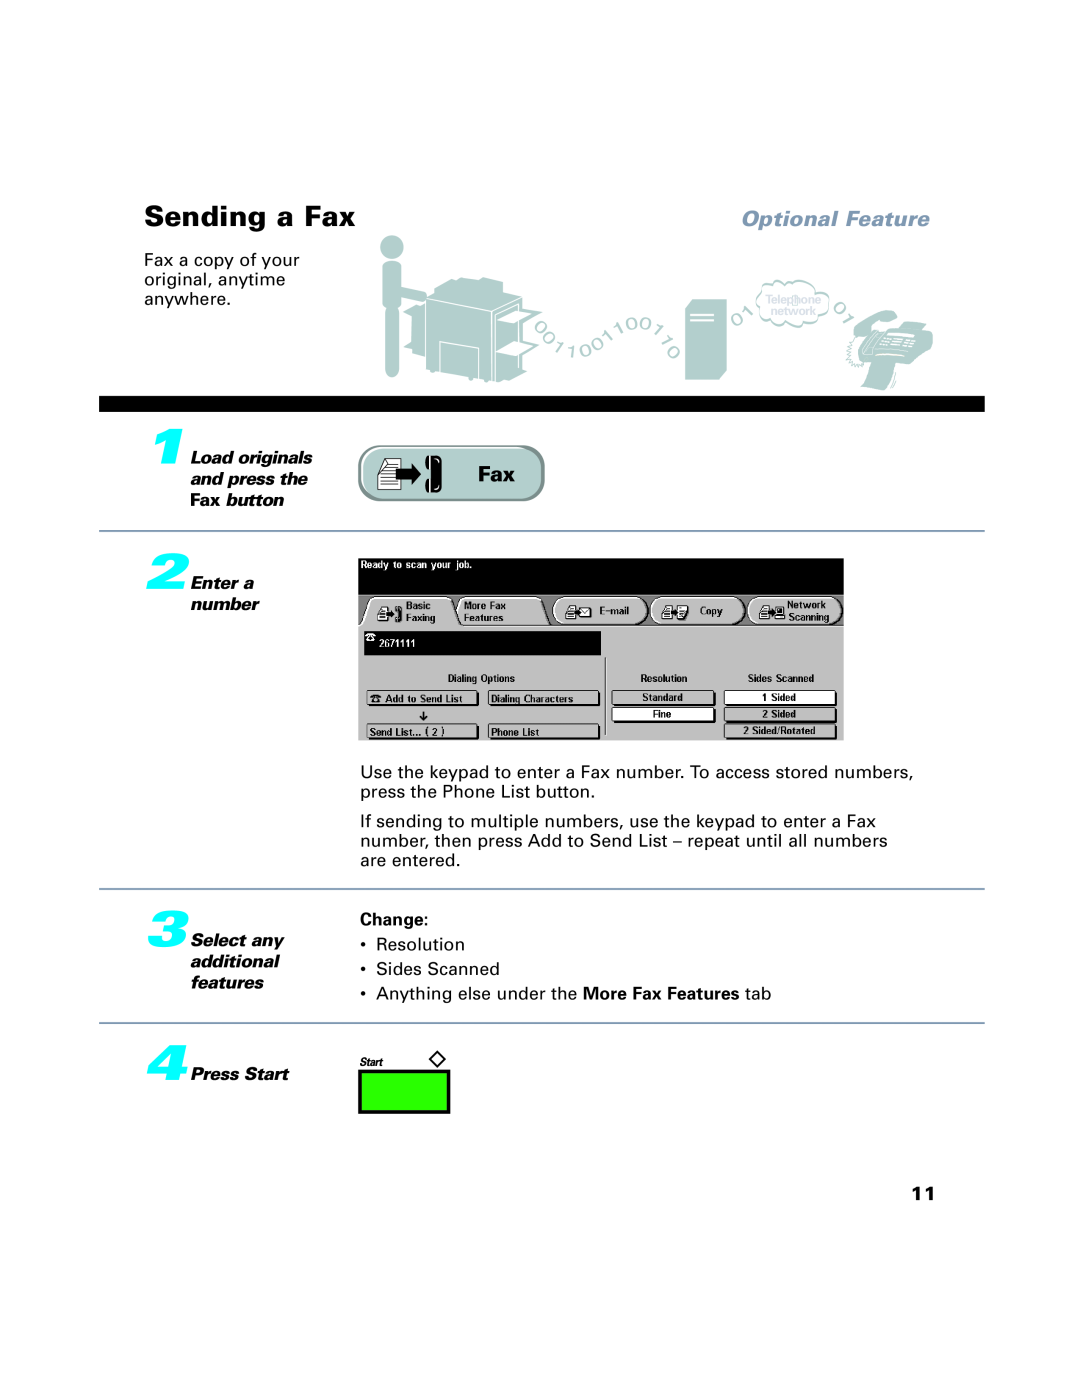 Xerox C65, C75, C90, 65, 75, 90 manual Sending a Fax, Change, Optional Feature 